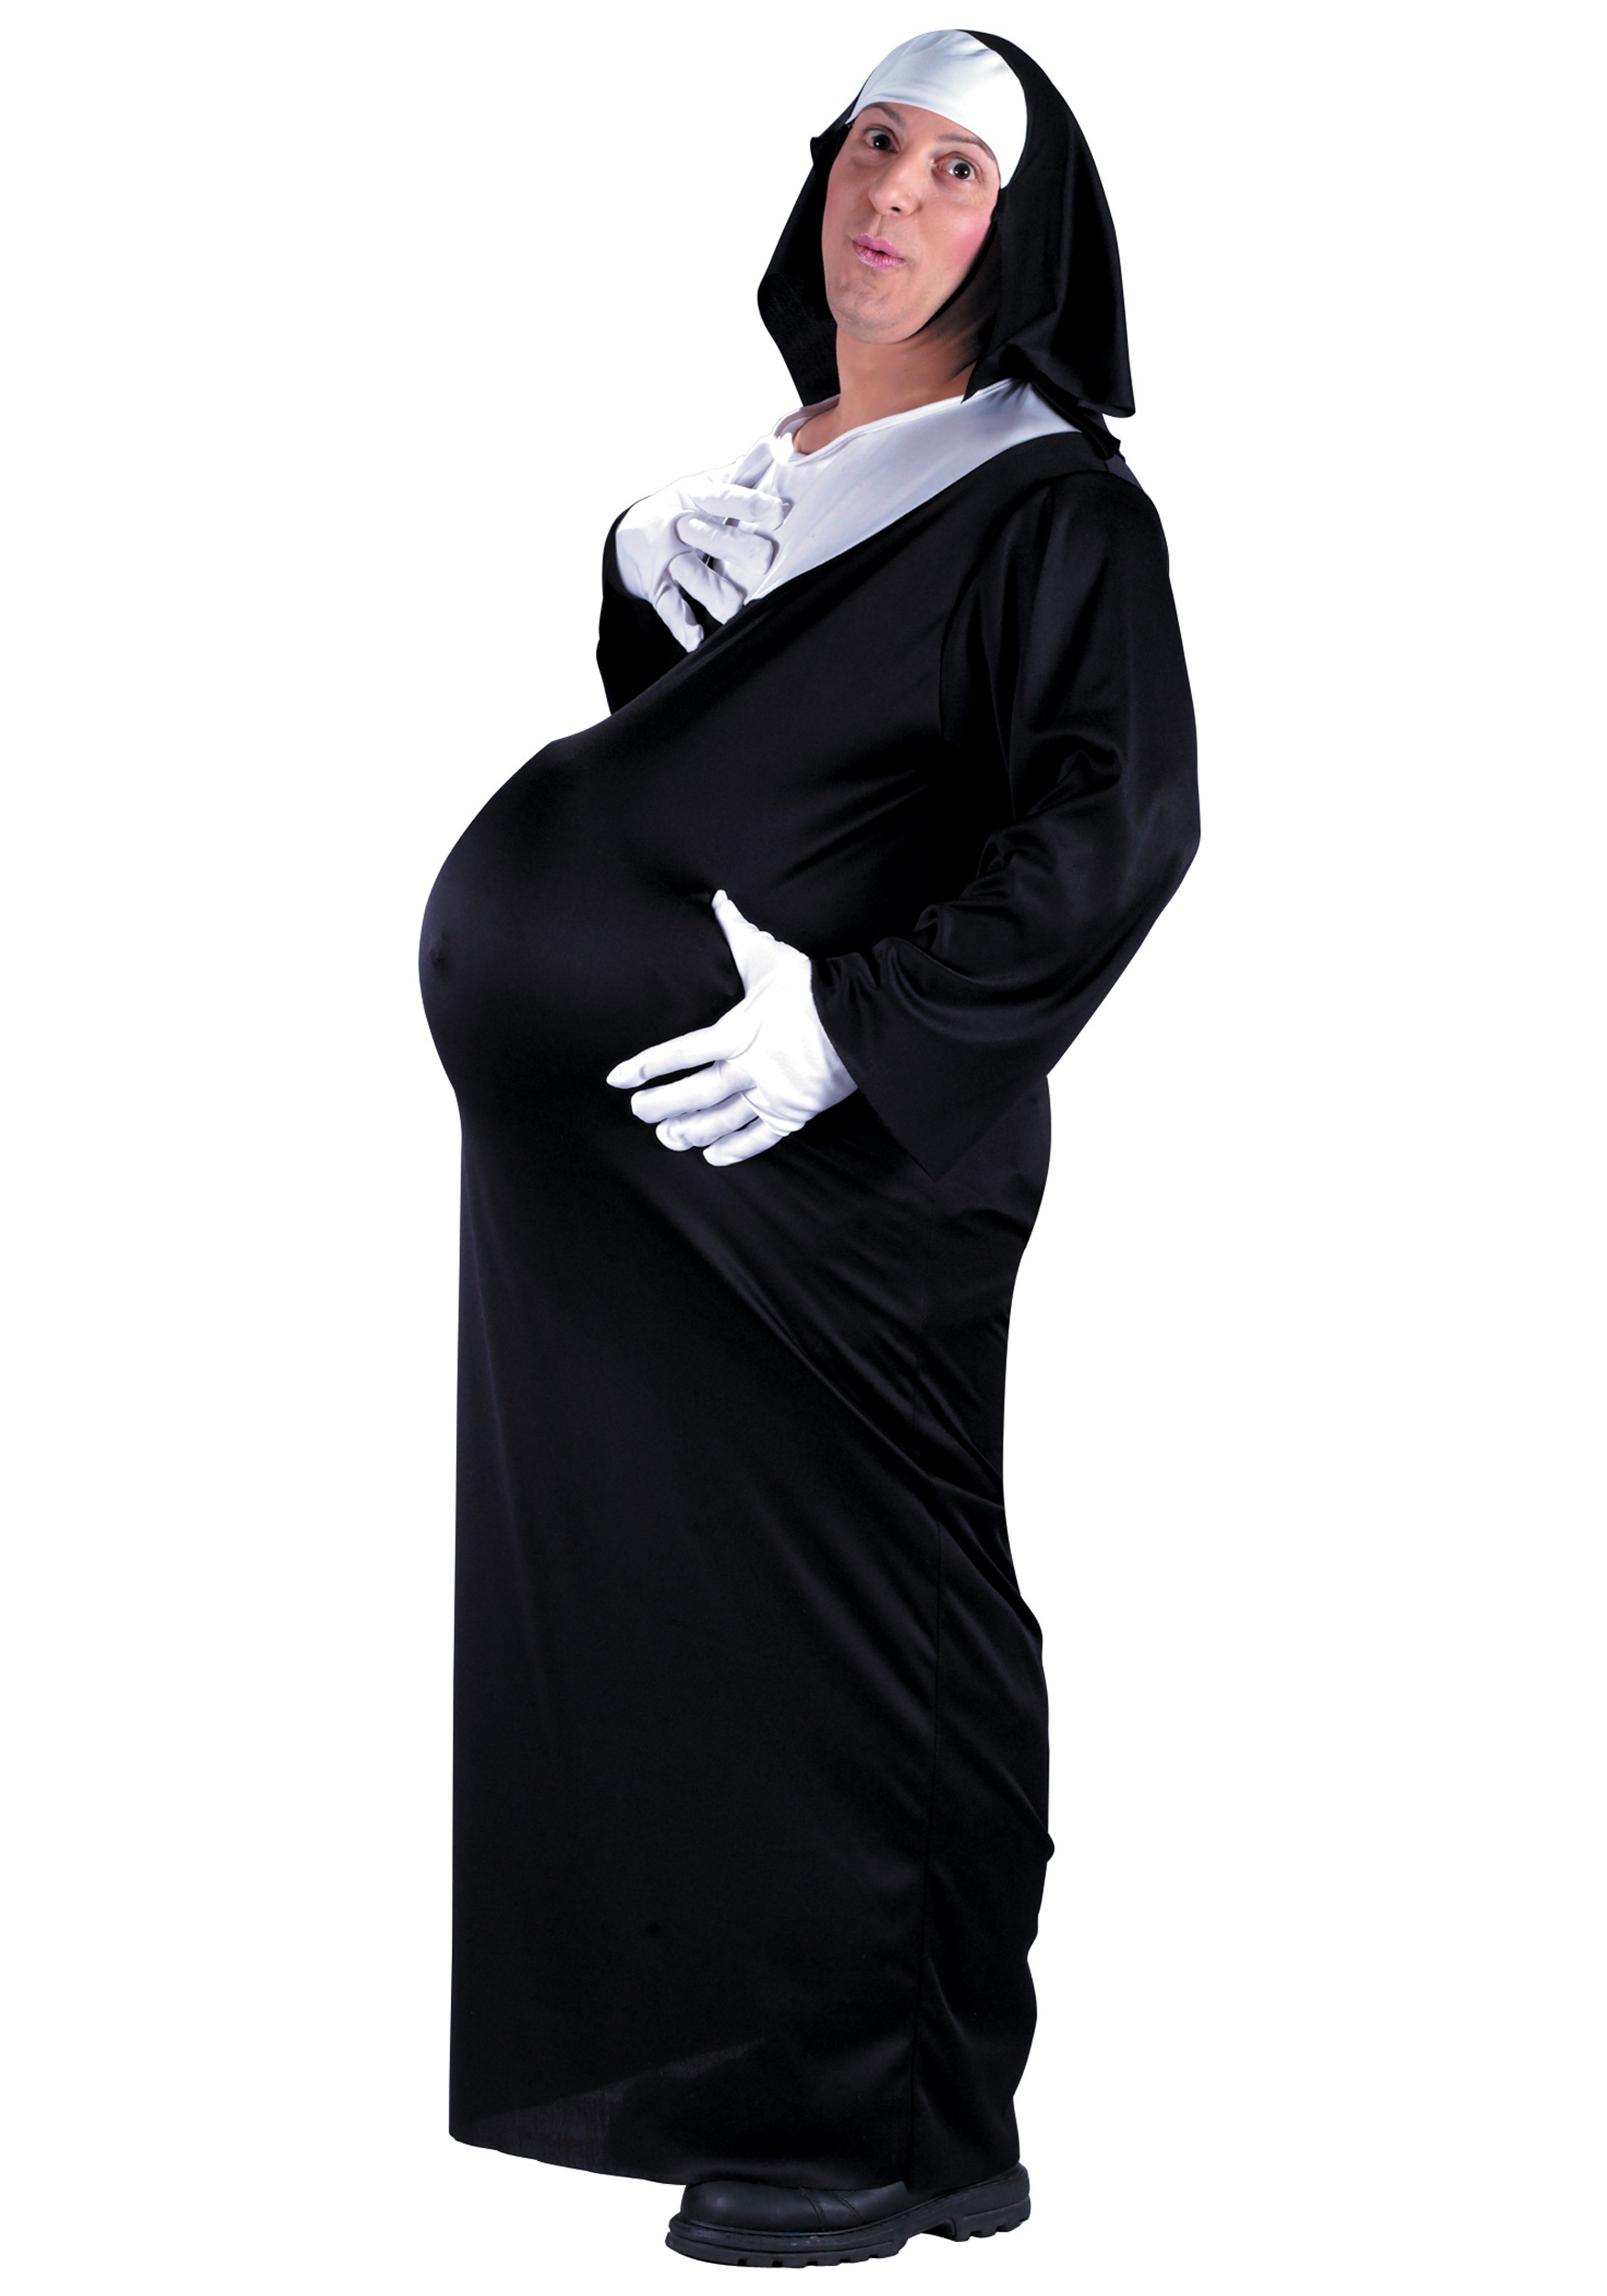 Pregnant Nun Costume